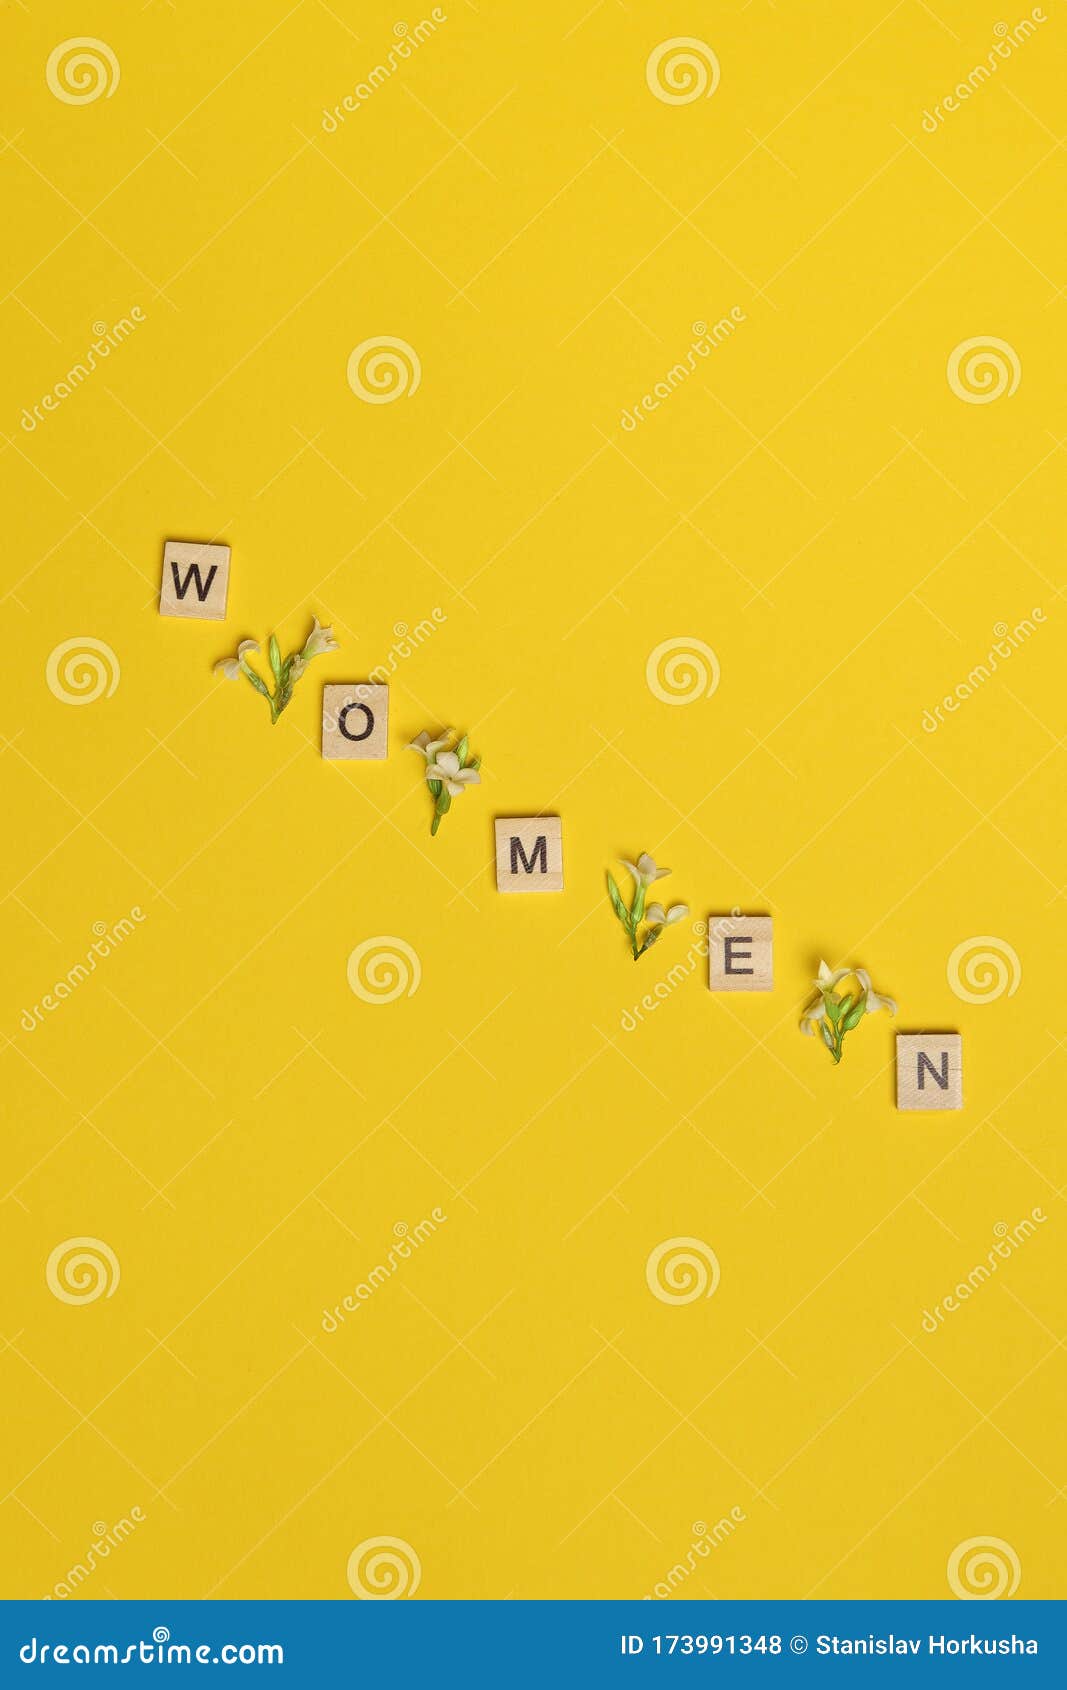 顶视图文字 女人在黄色背景上用木块拼写 中间有花爱 8月背景礼物 库存照片 图片包括有礼物 顶视图文字 女人在黄色背景上用木块拼写 中间有花